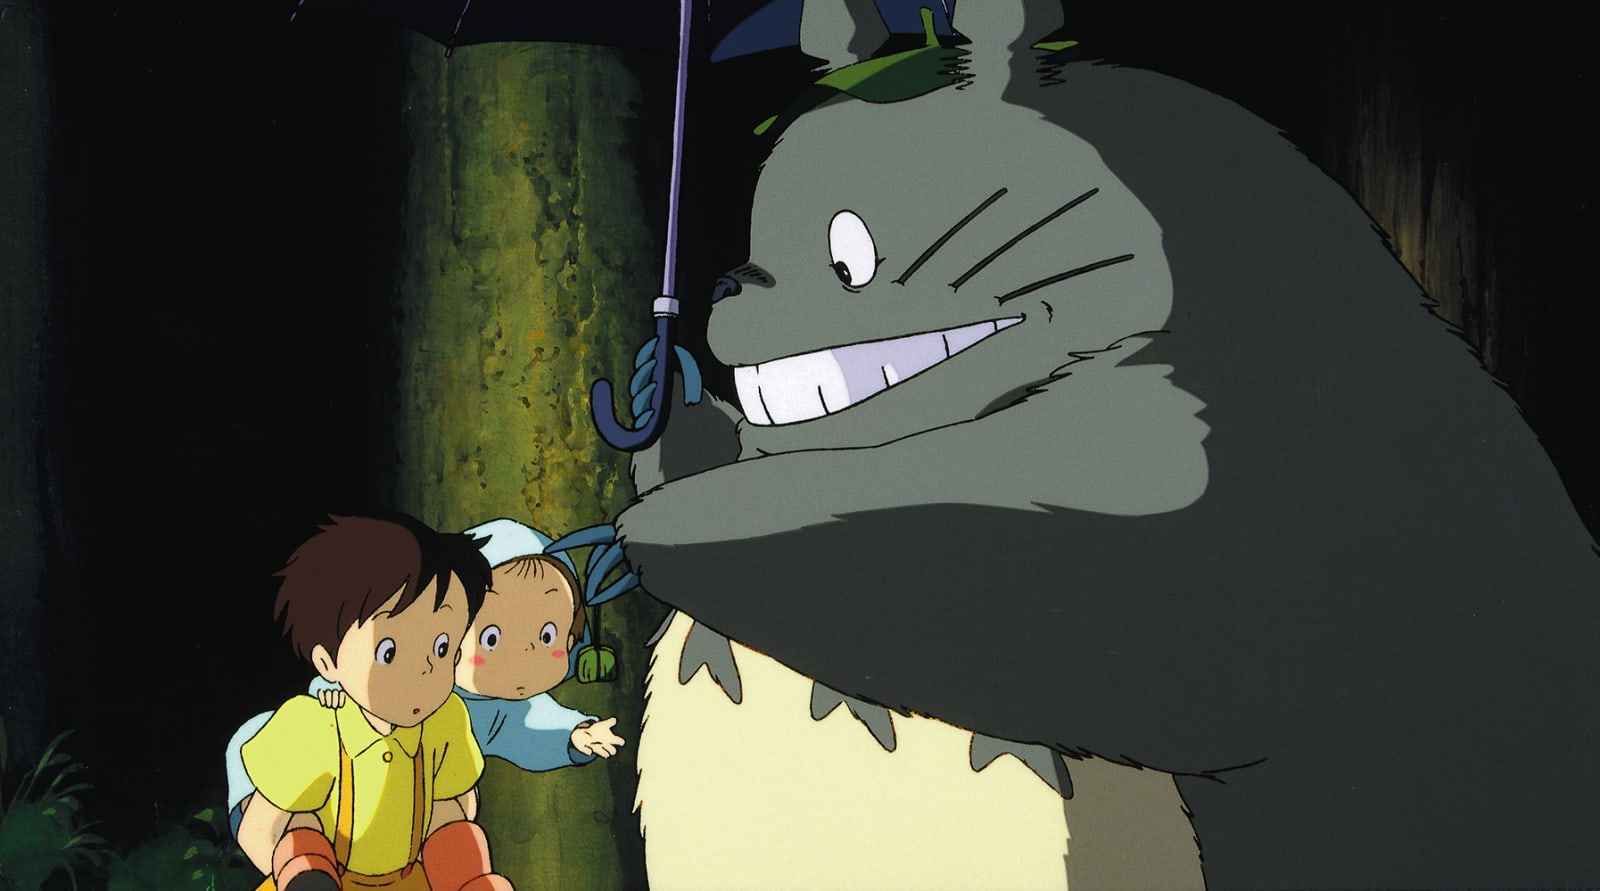 Totoro | Studio ghibli characters, Totoro, My neighbor totoro